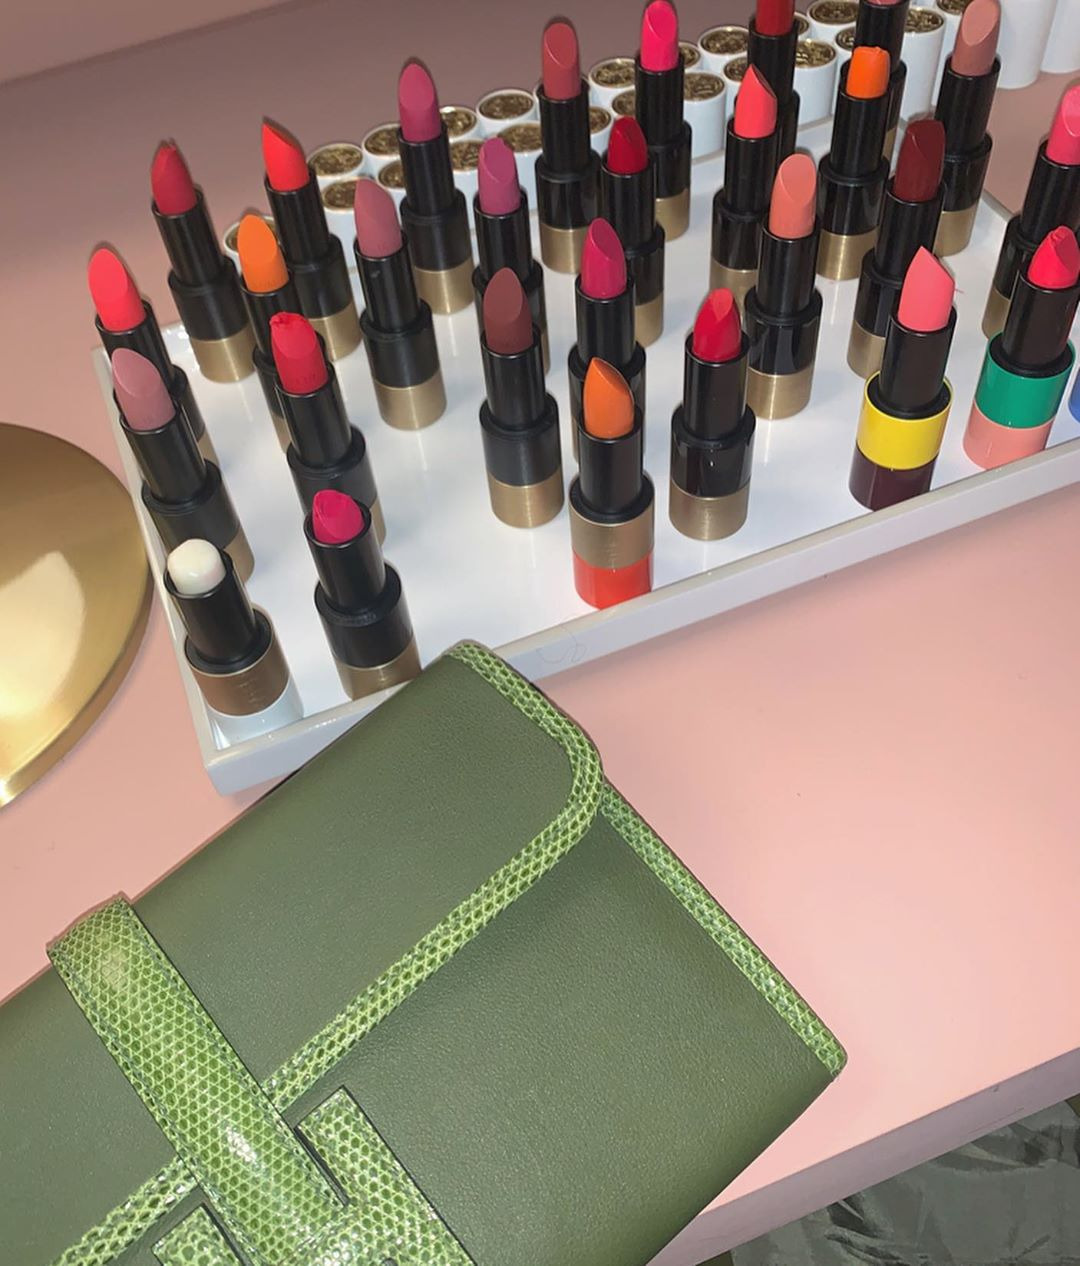 Kim Kardashian'dan Hailey Baldwin'e Haftanın Güzellik Instagramları